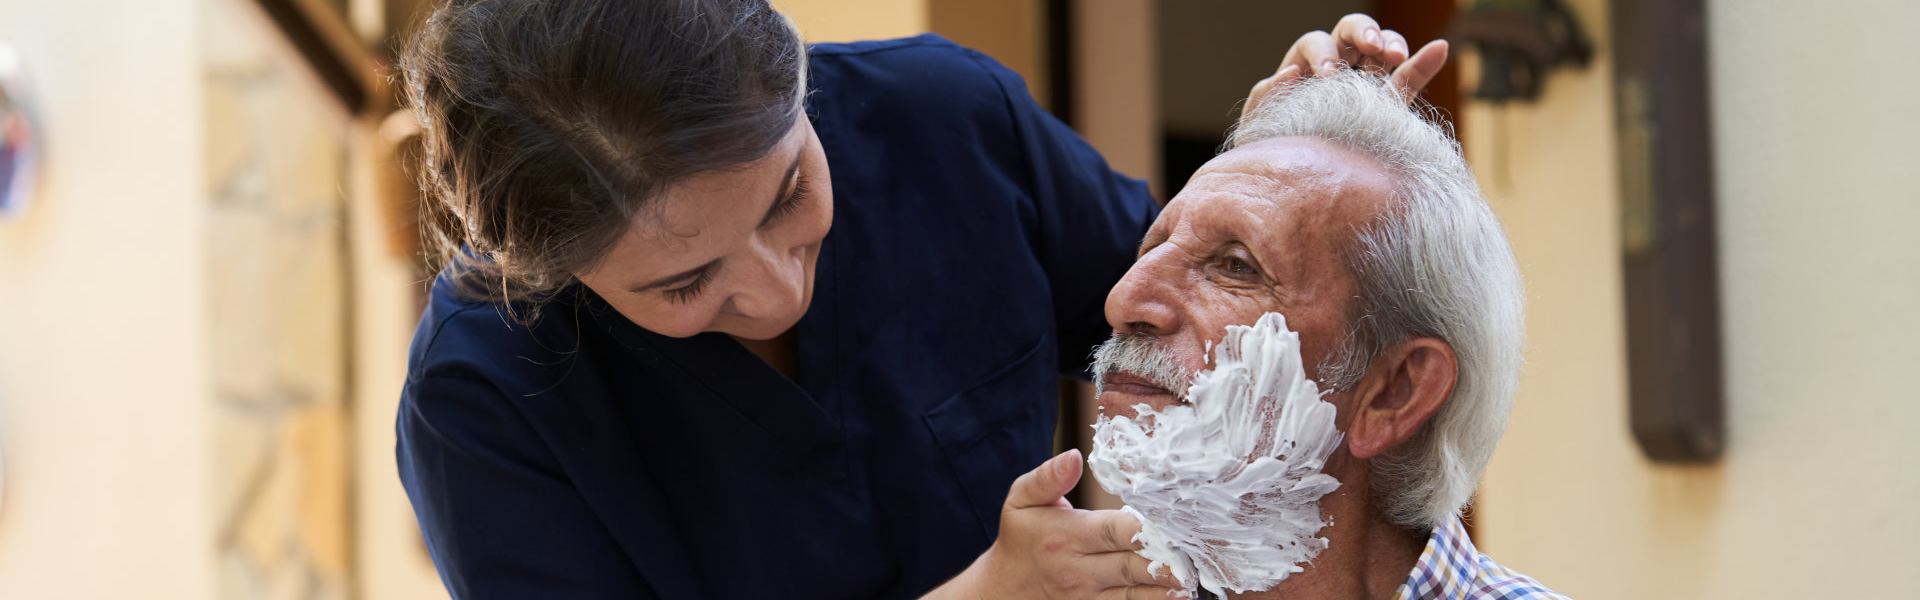 caregiver shaving the beard of an elderly